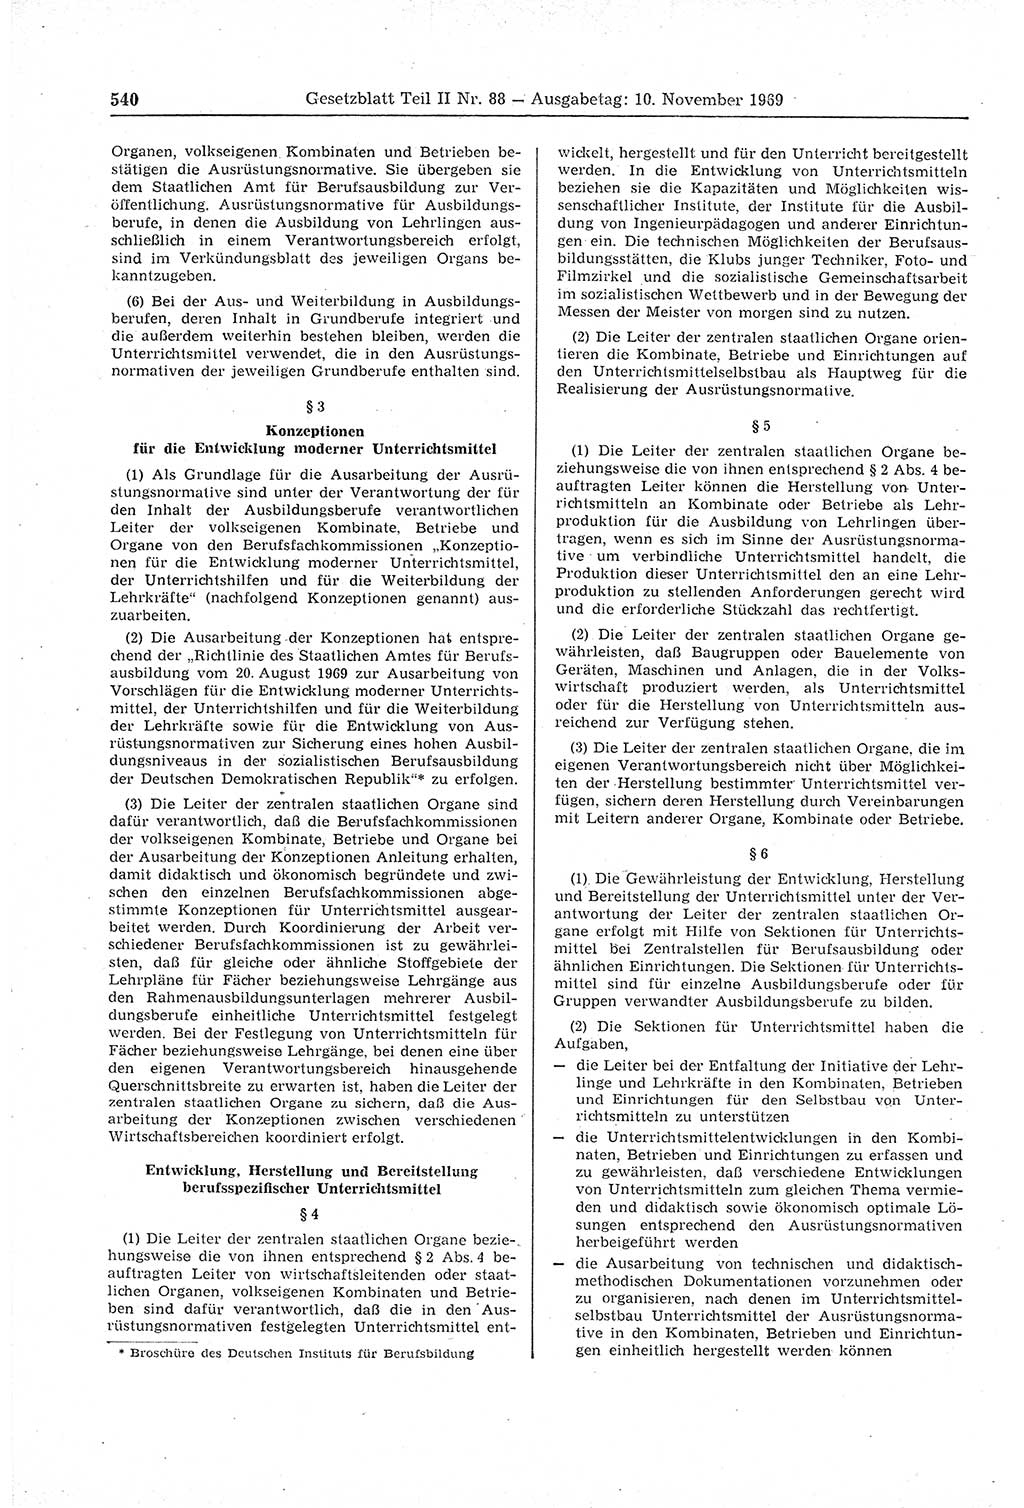 Gesetzblatt (GBl.) der Deutschen Demokratischen Republik (DDR) Teil ⅠⅠ 1969, Seite 540 (GBl. DDR ⅠⅠ 1969, S. 540)